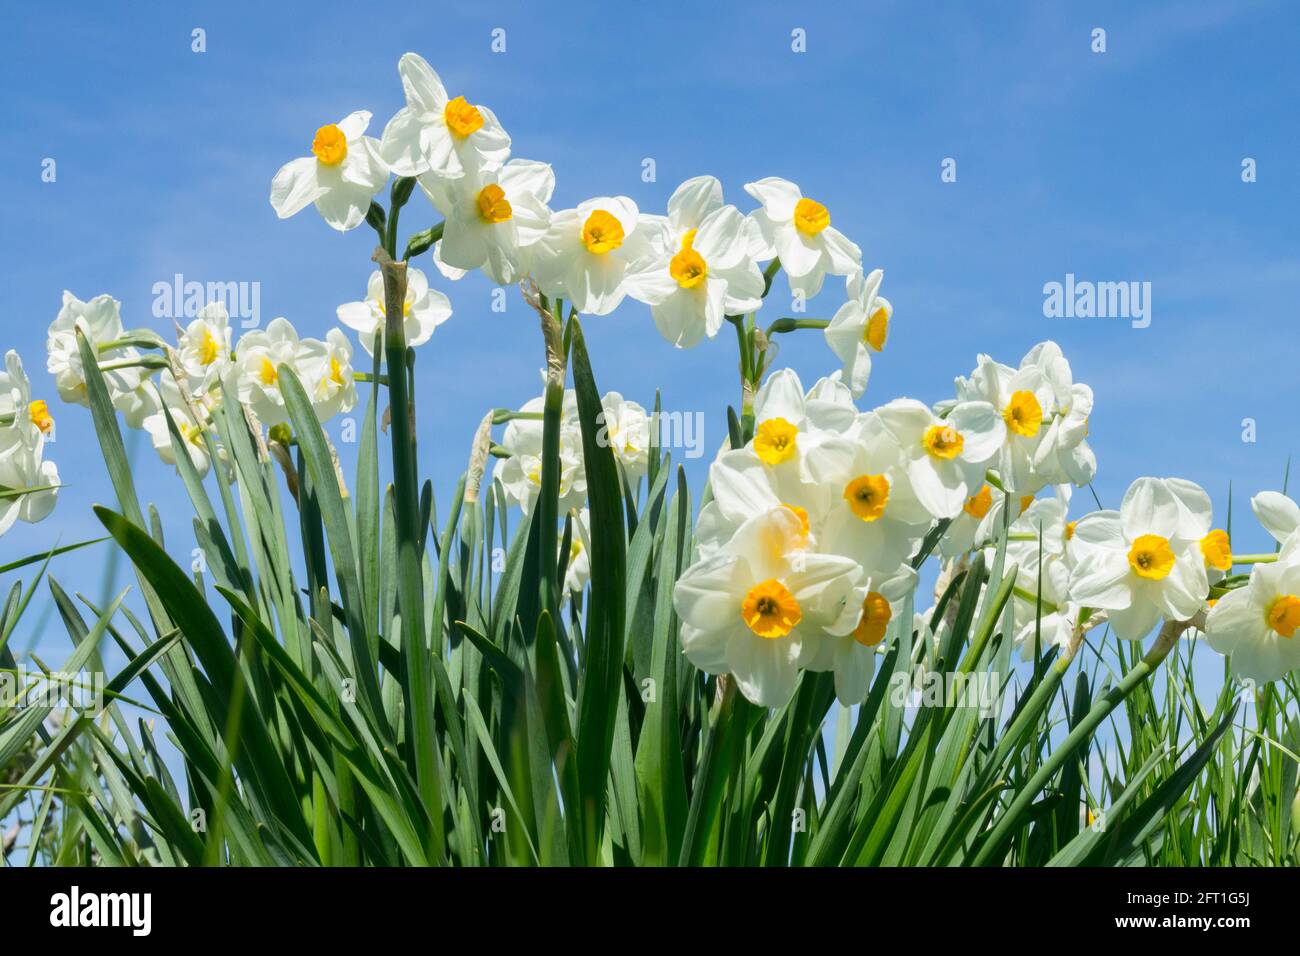 Los narcisos blancos primaverales contra el cielo azul Foto de stock